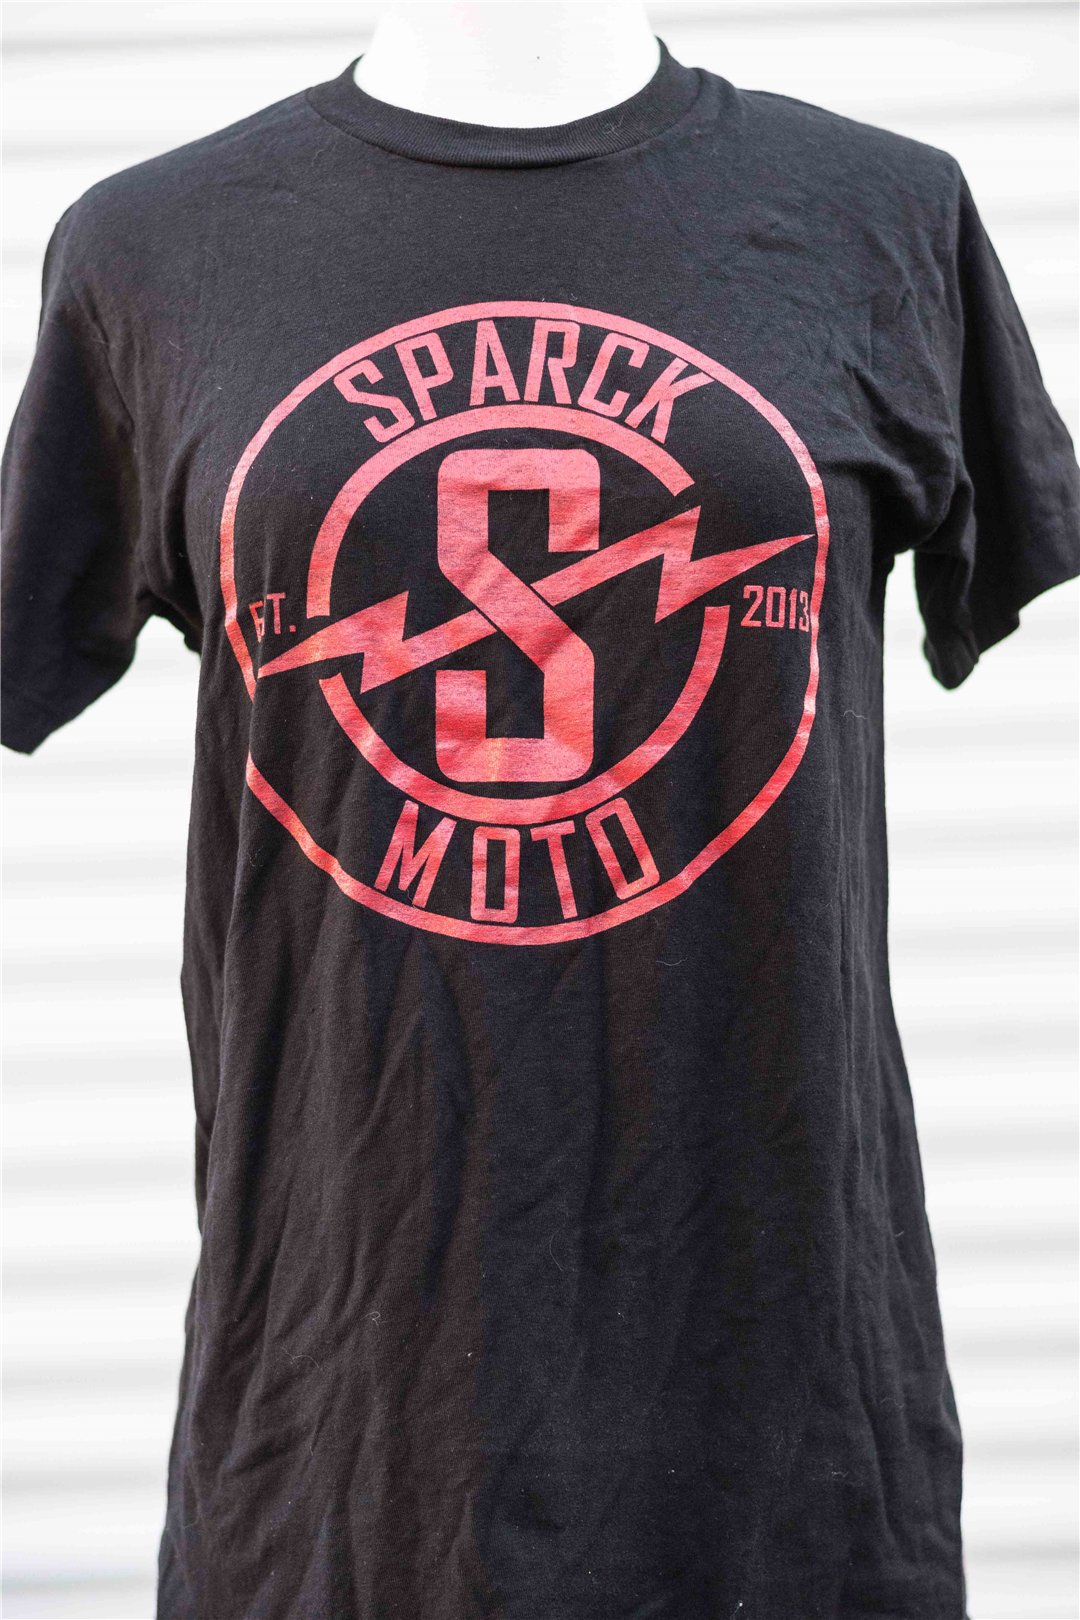 Sparck Moto T-Shirt